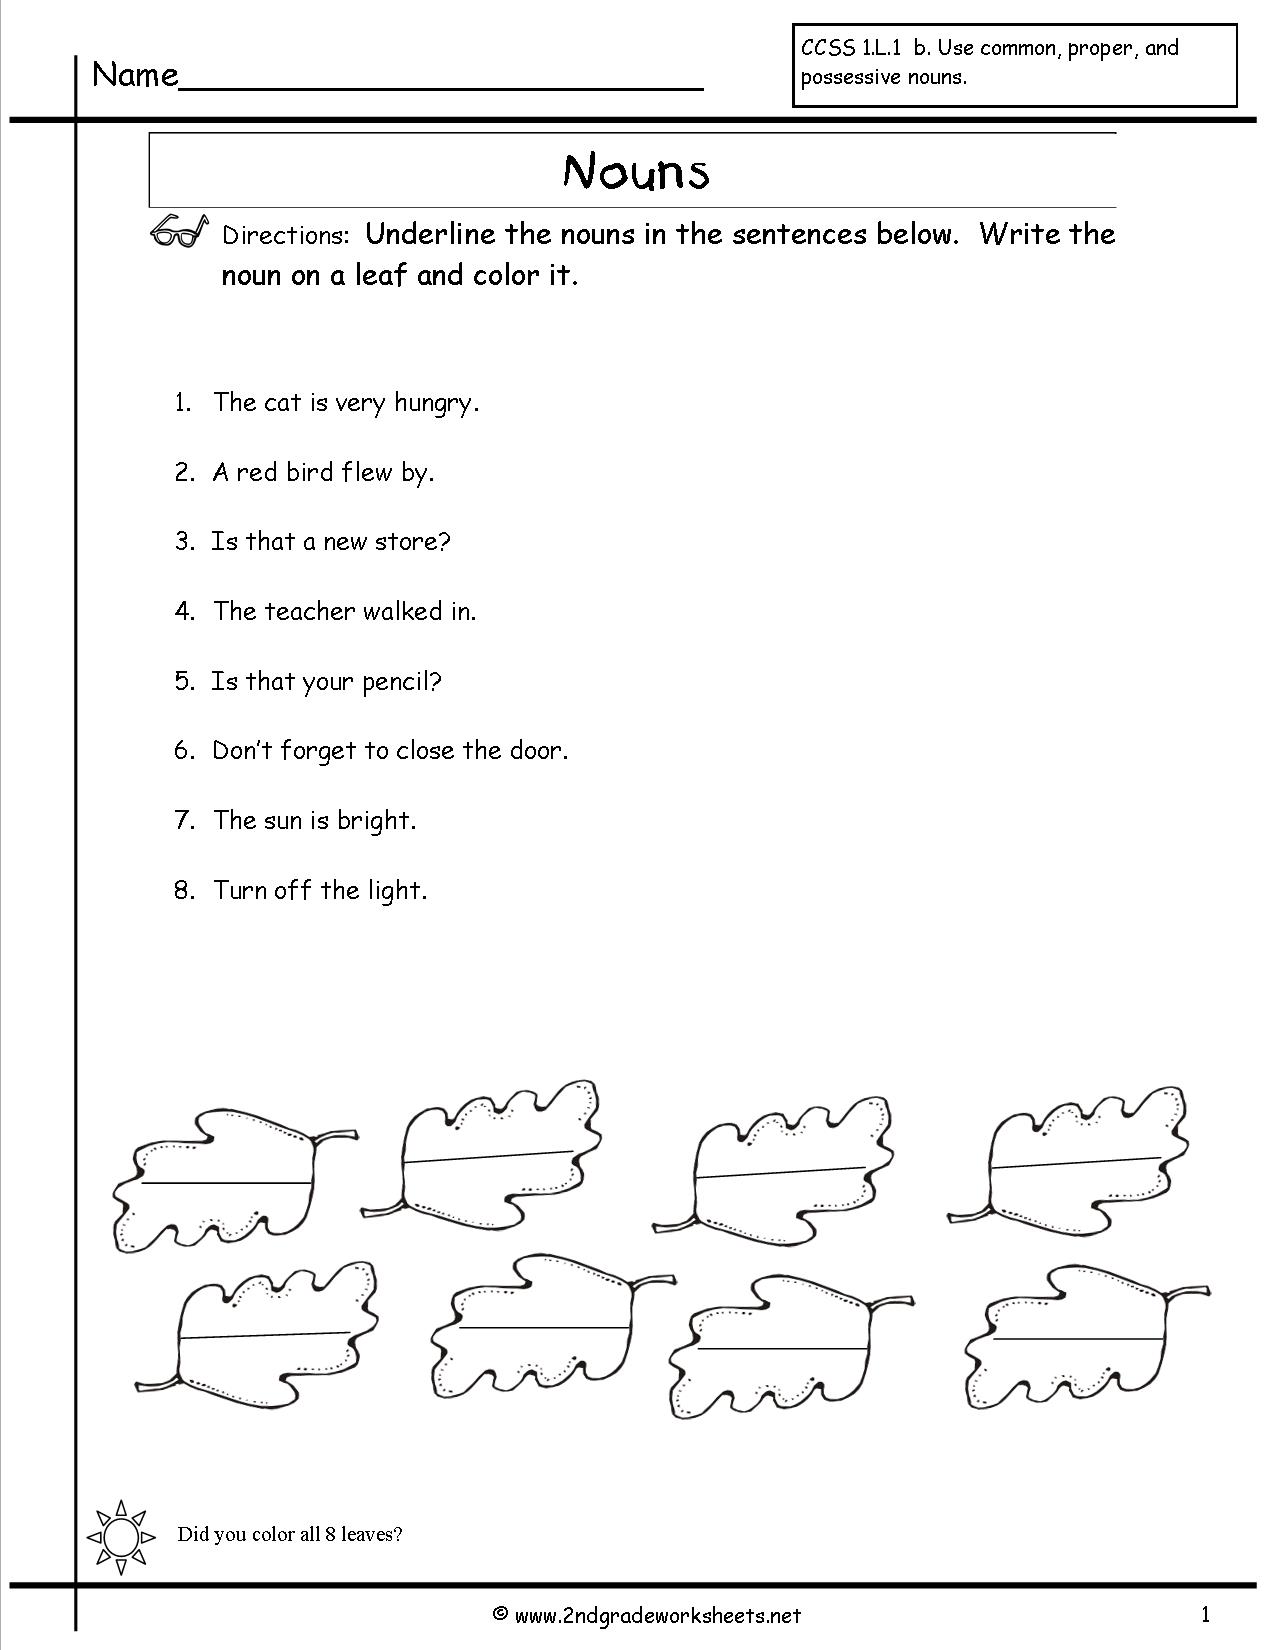 19 Best Images Of Proper Noun Worksheets Grade 1 Nouns Worksheets 2nd Grade Common And Proper